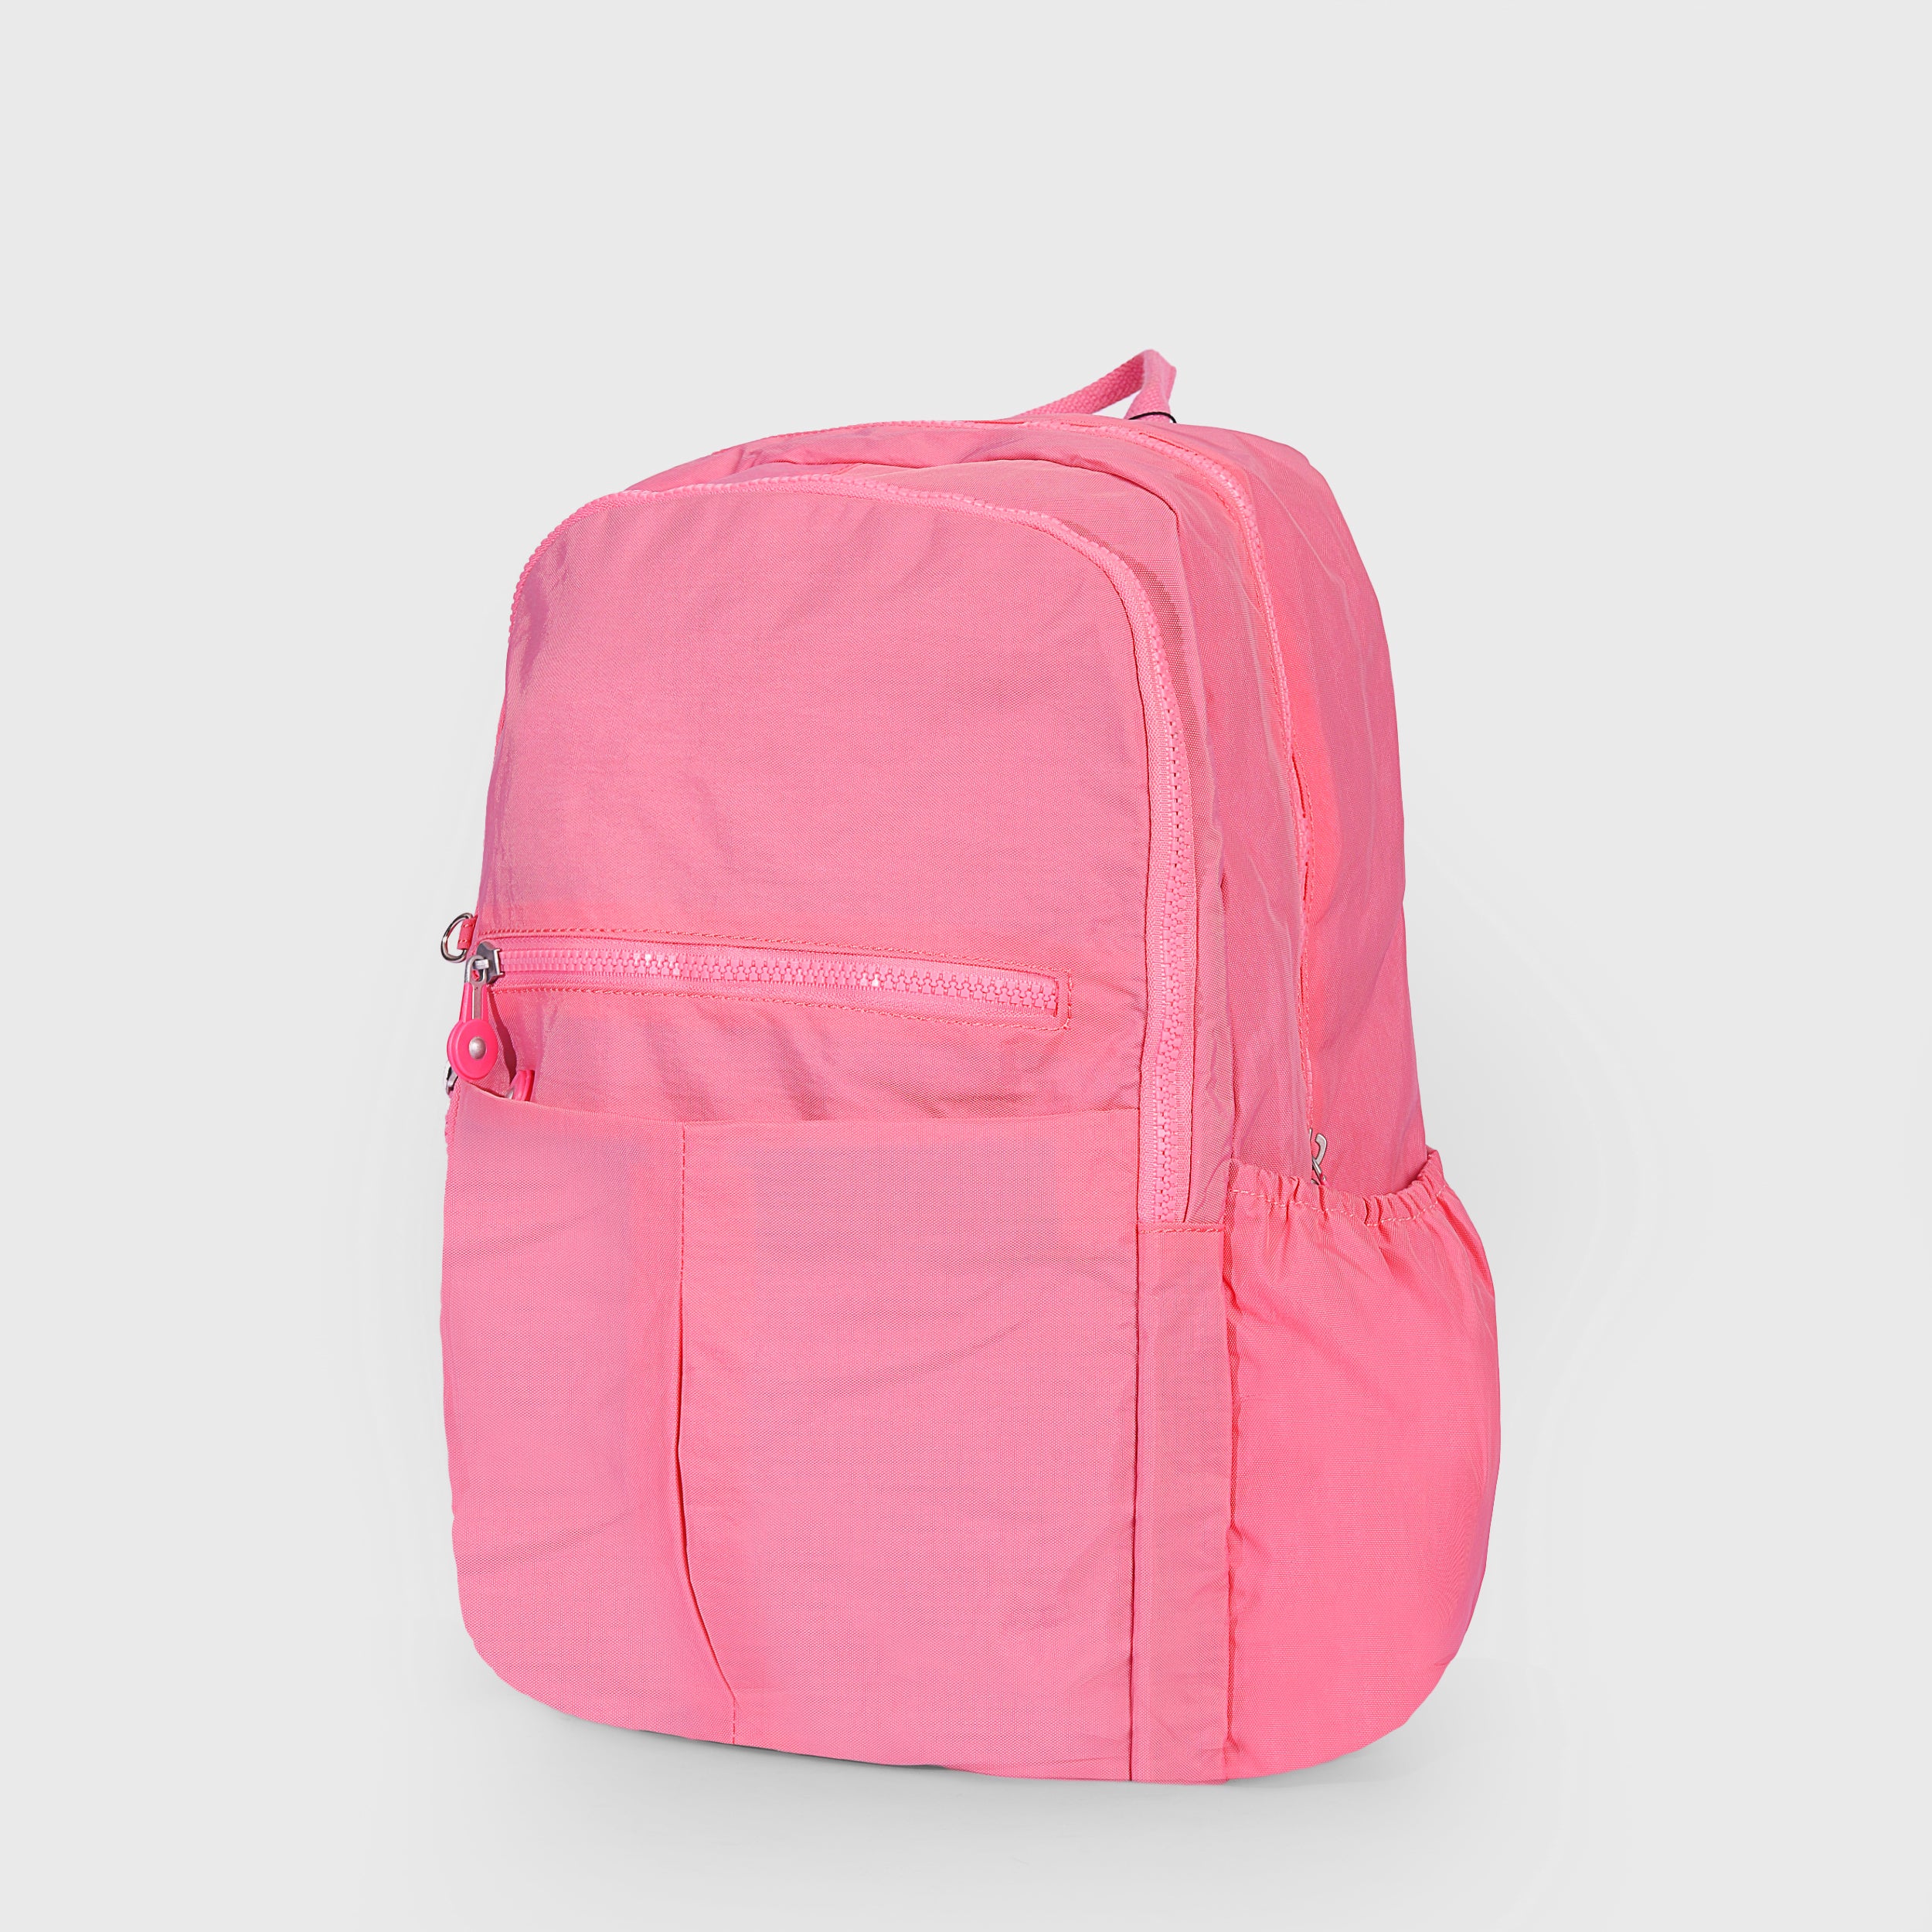 Basic III School Bag For Teens 18 INCH